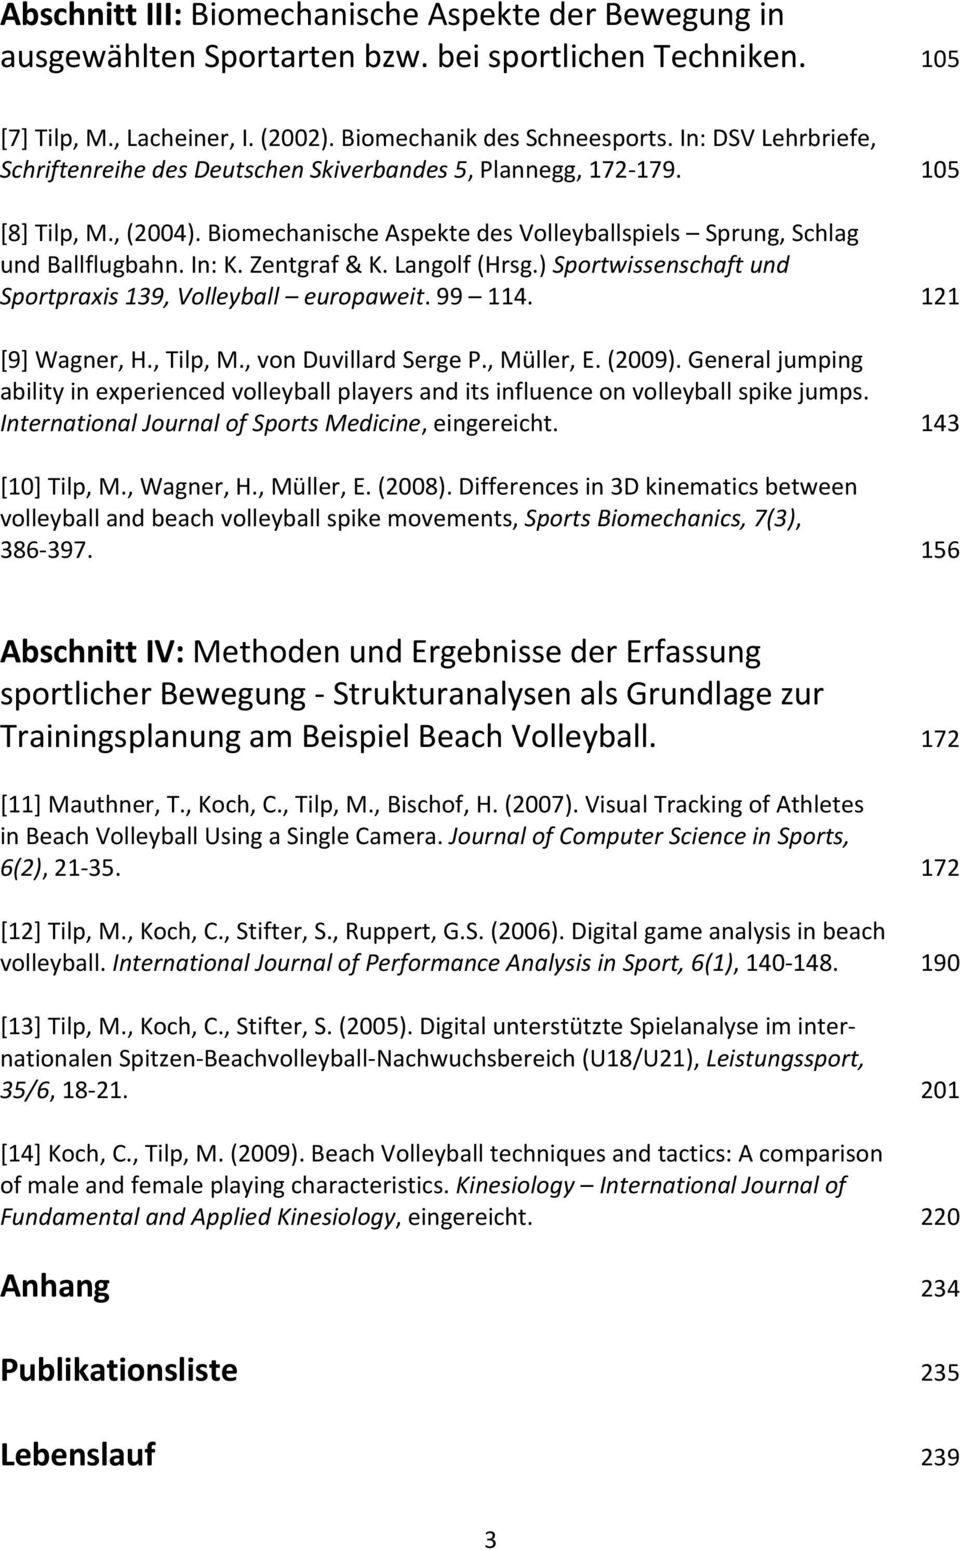 Zentgraf & K. Langolf (Hrsg.) Sportwissenschaft und Sportpraxis 139, Volleyball europaweit. 99 114. 121 [9] Wagner, H., Tilp, M., von Duvillard Serge P., Müller, E. (2009).